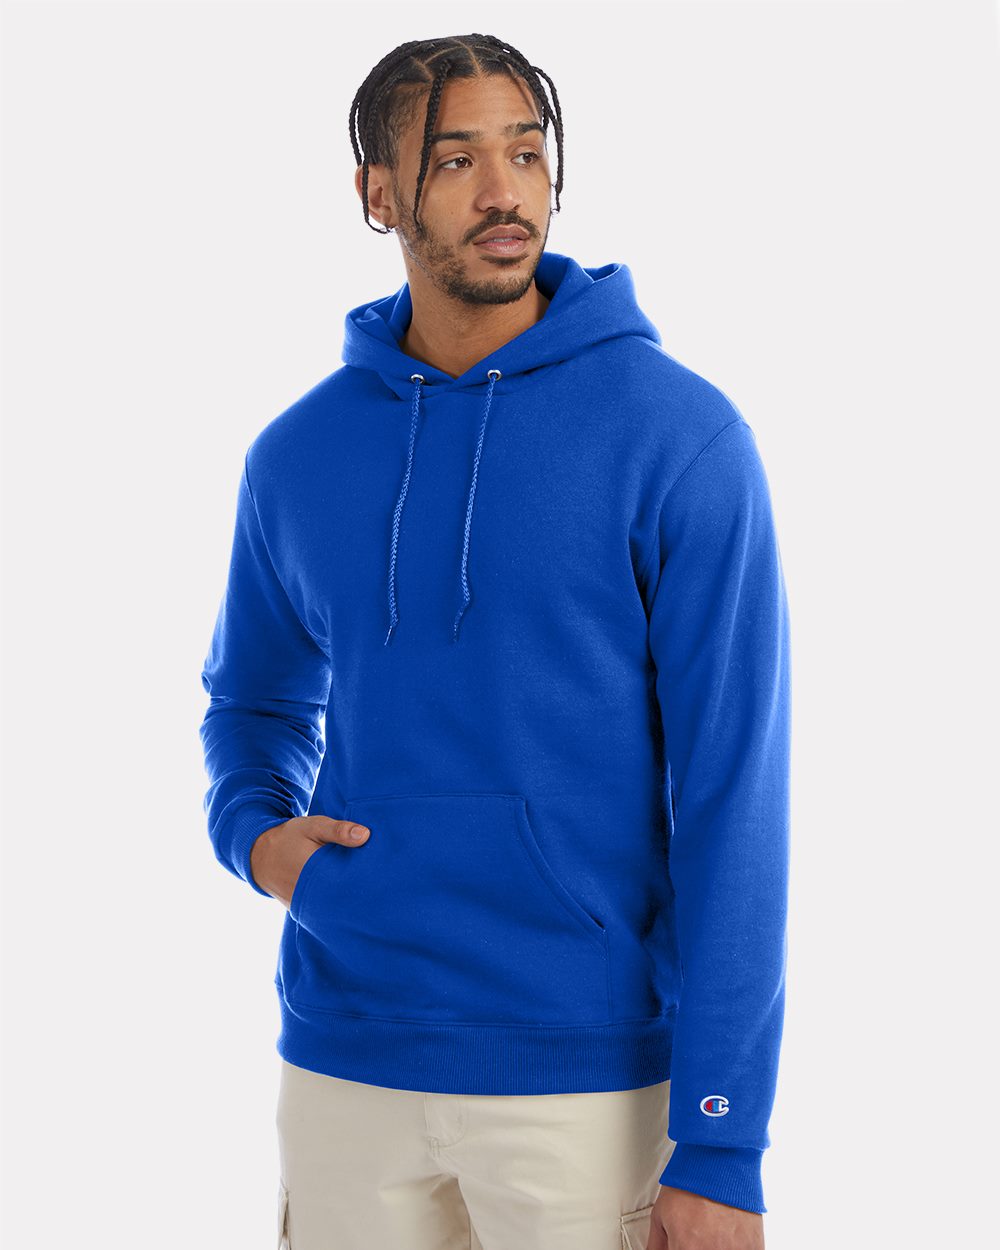 Verlichting Bevestigen wekelijks Champion S700 - Powerblend® Hooded Sweatshirt